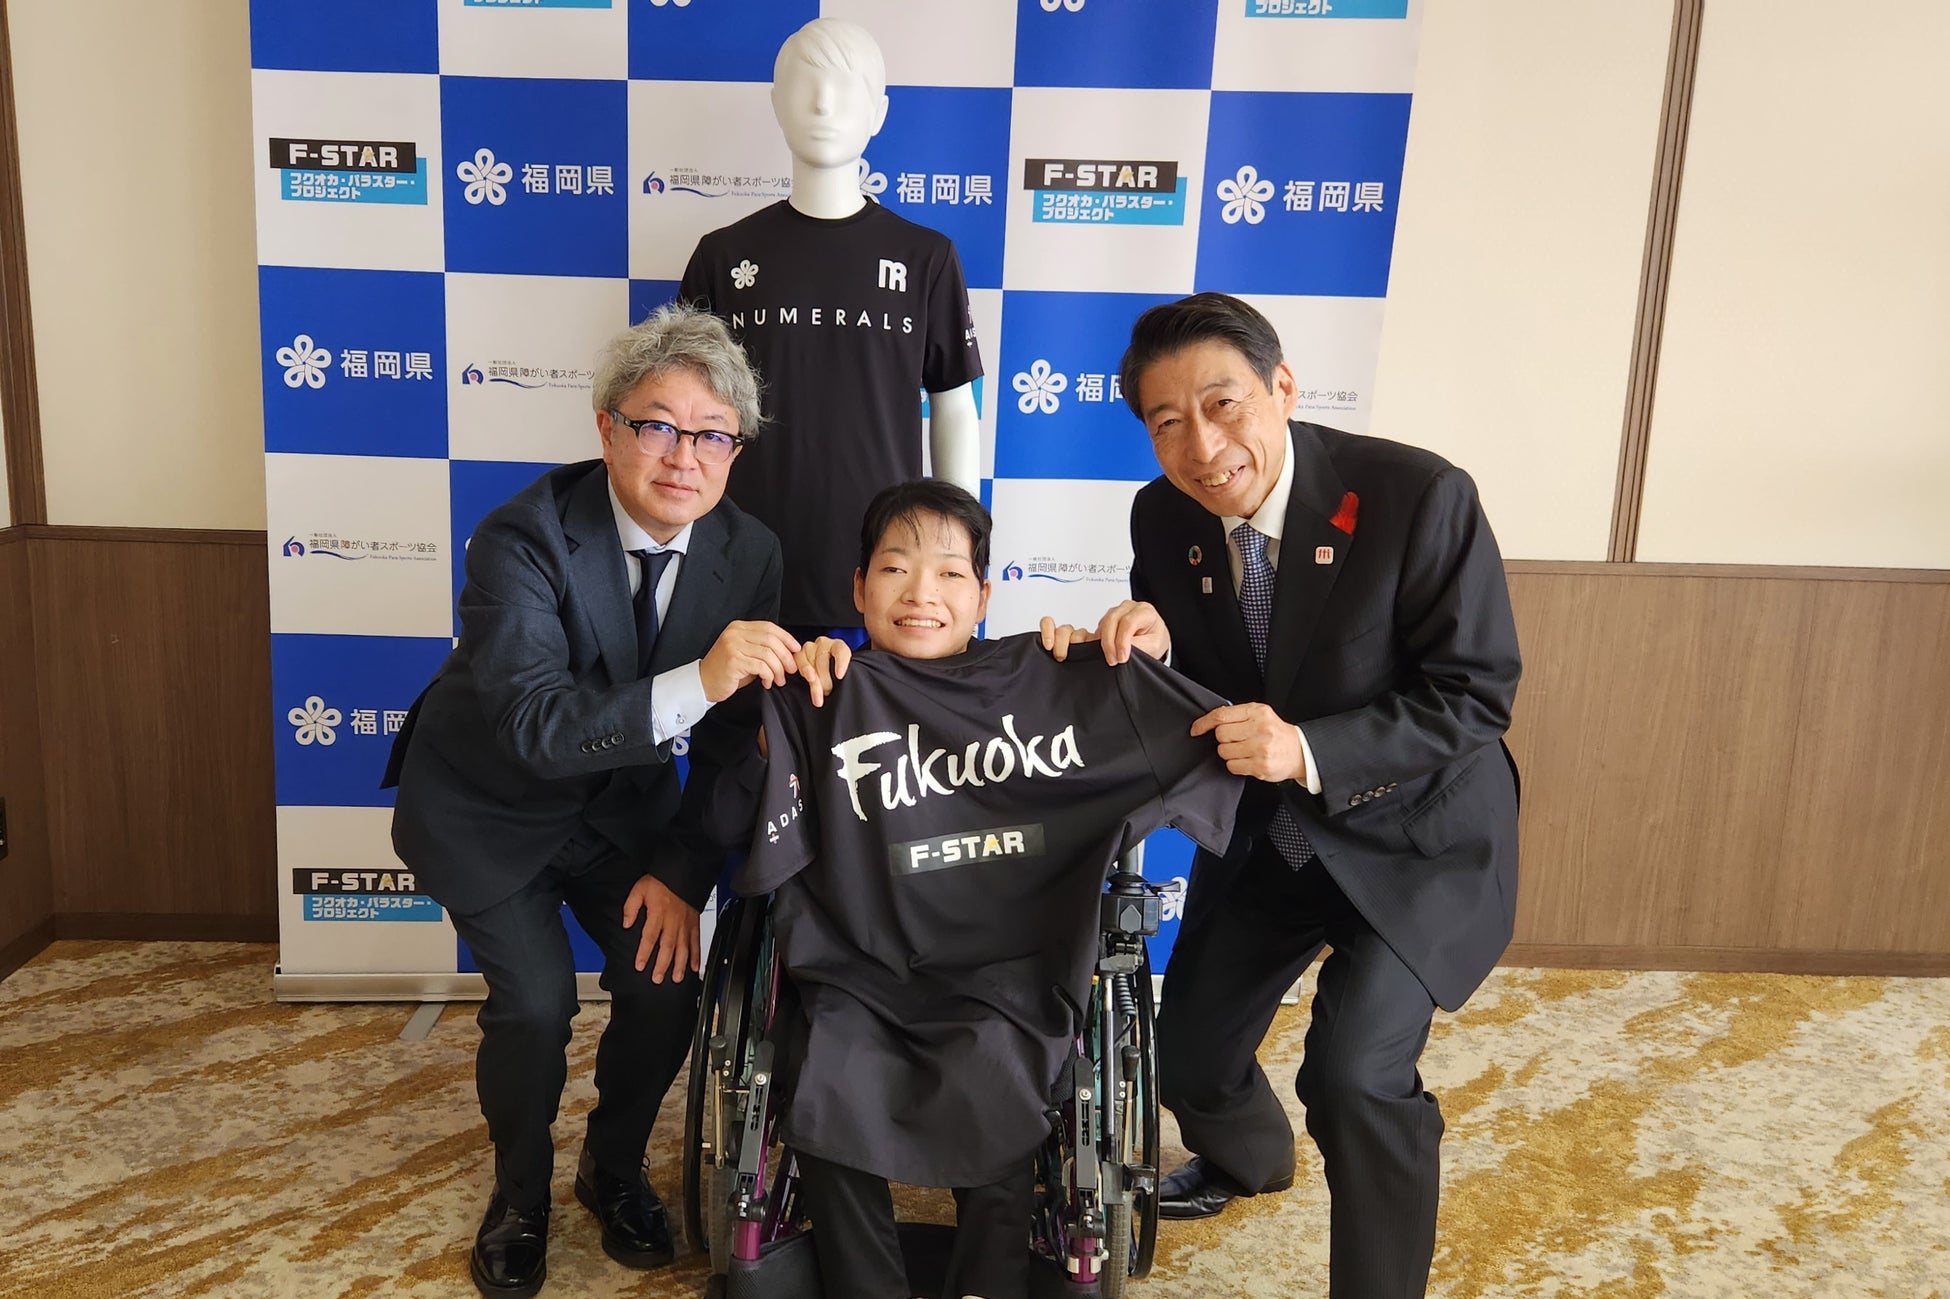 株式会社ユニフォームネットが福島ファイヤーボンズの2023-24シーズン オフィシャルパートナーに就任